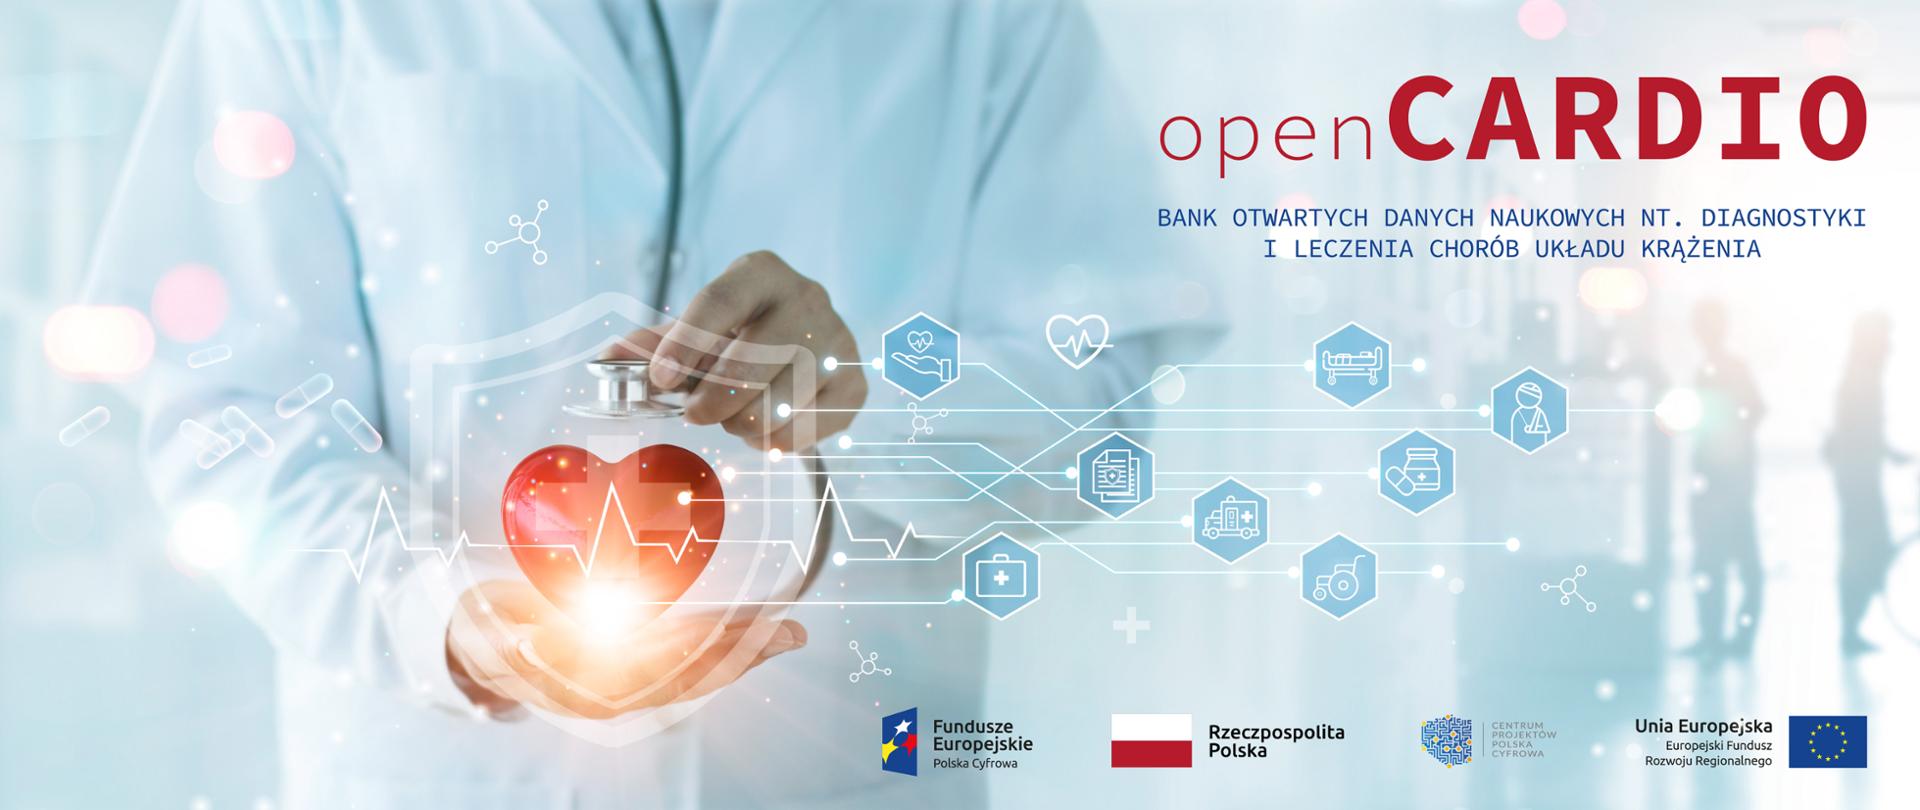 openCARDIO - bank otwartych danych naukowych nt. diagnostyki i leczenia chorób układu krążenia